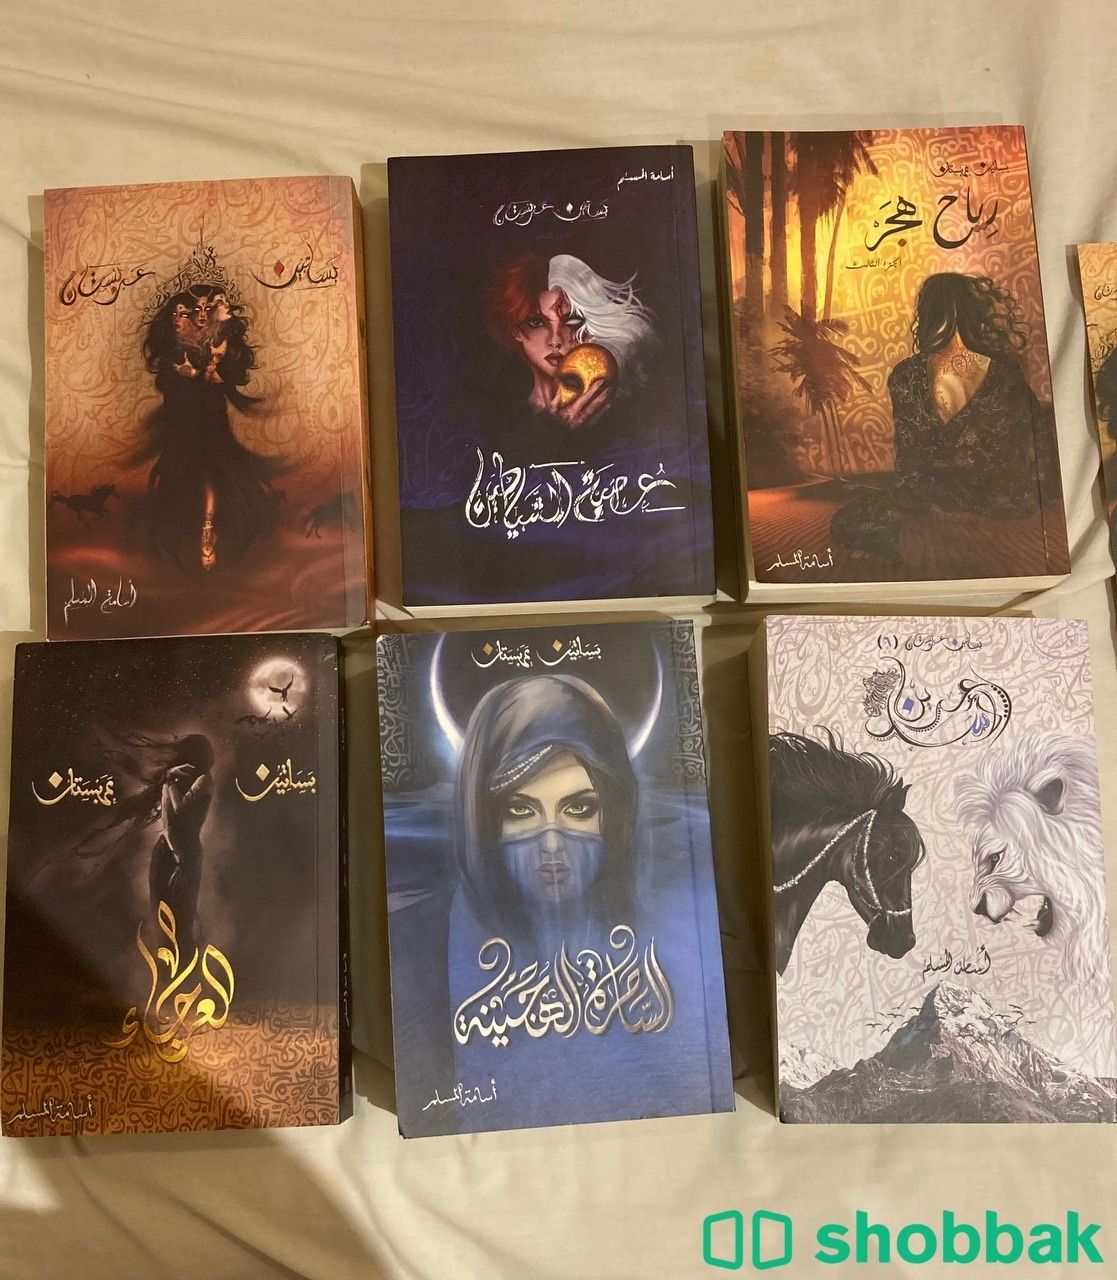 سلسلة( بساتين عربستان)كاملة ٦ كتب، للكاتب اسامة المسبم شباك السعودية